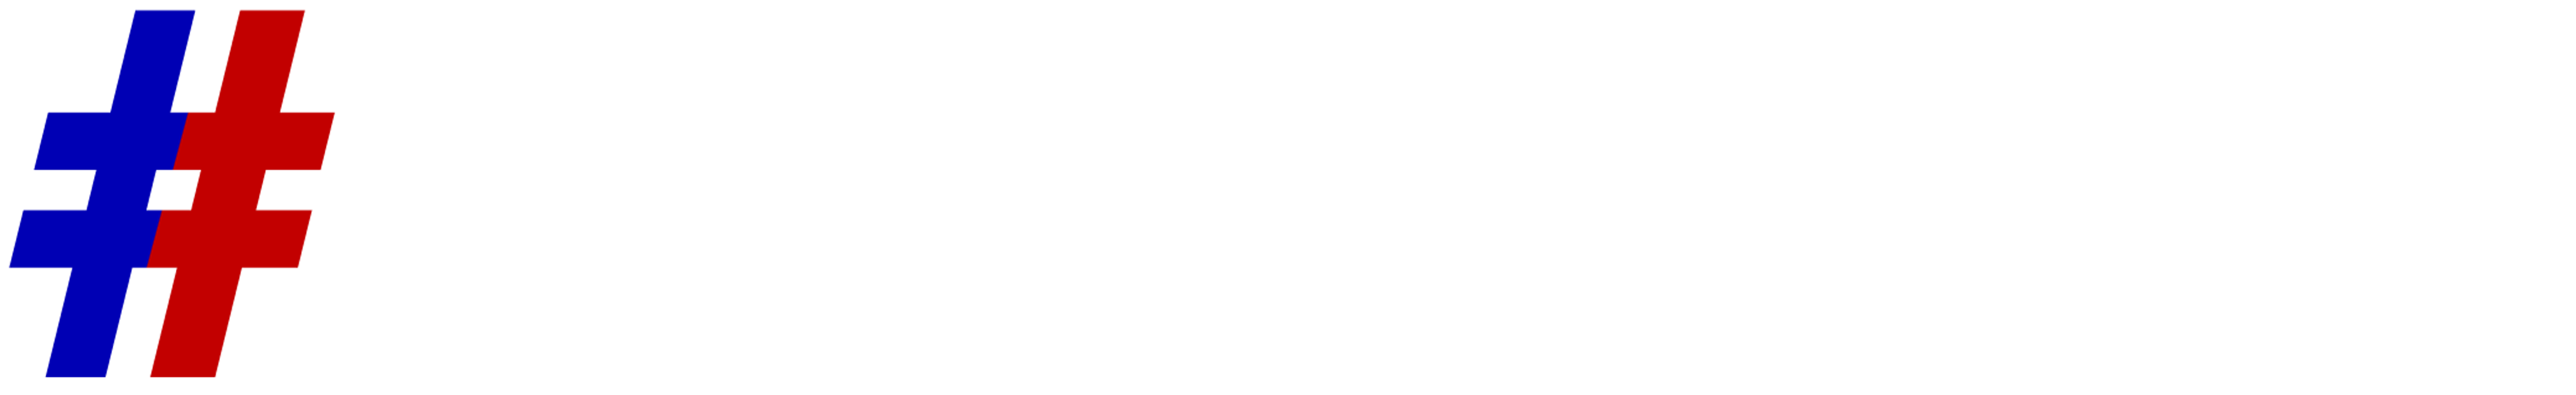 WhyVote Logo